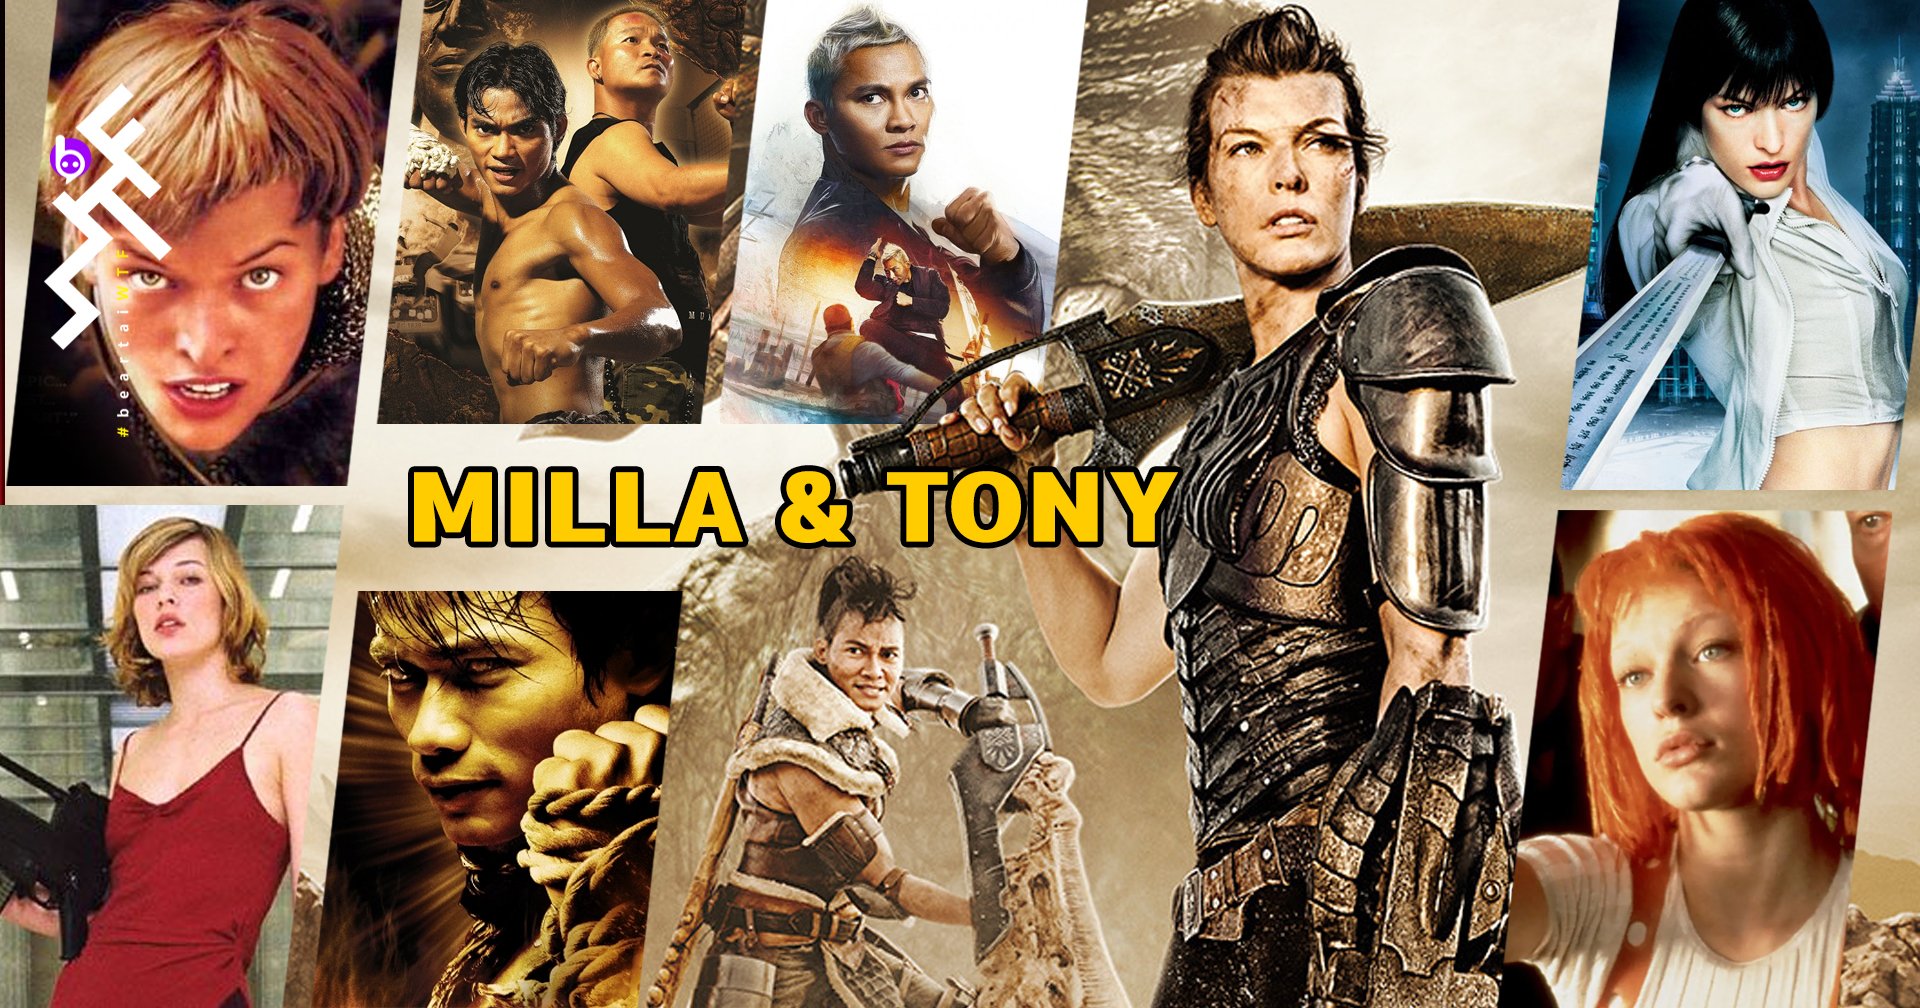 5 บทบาทที่น่าจดจำตลอดกาลของ Milla Jovovich & Tony Jaa